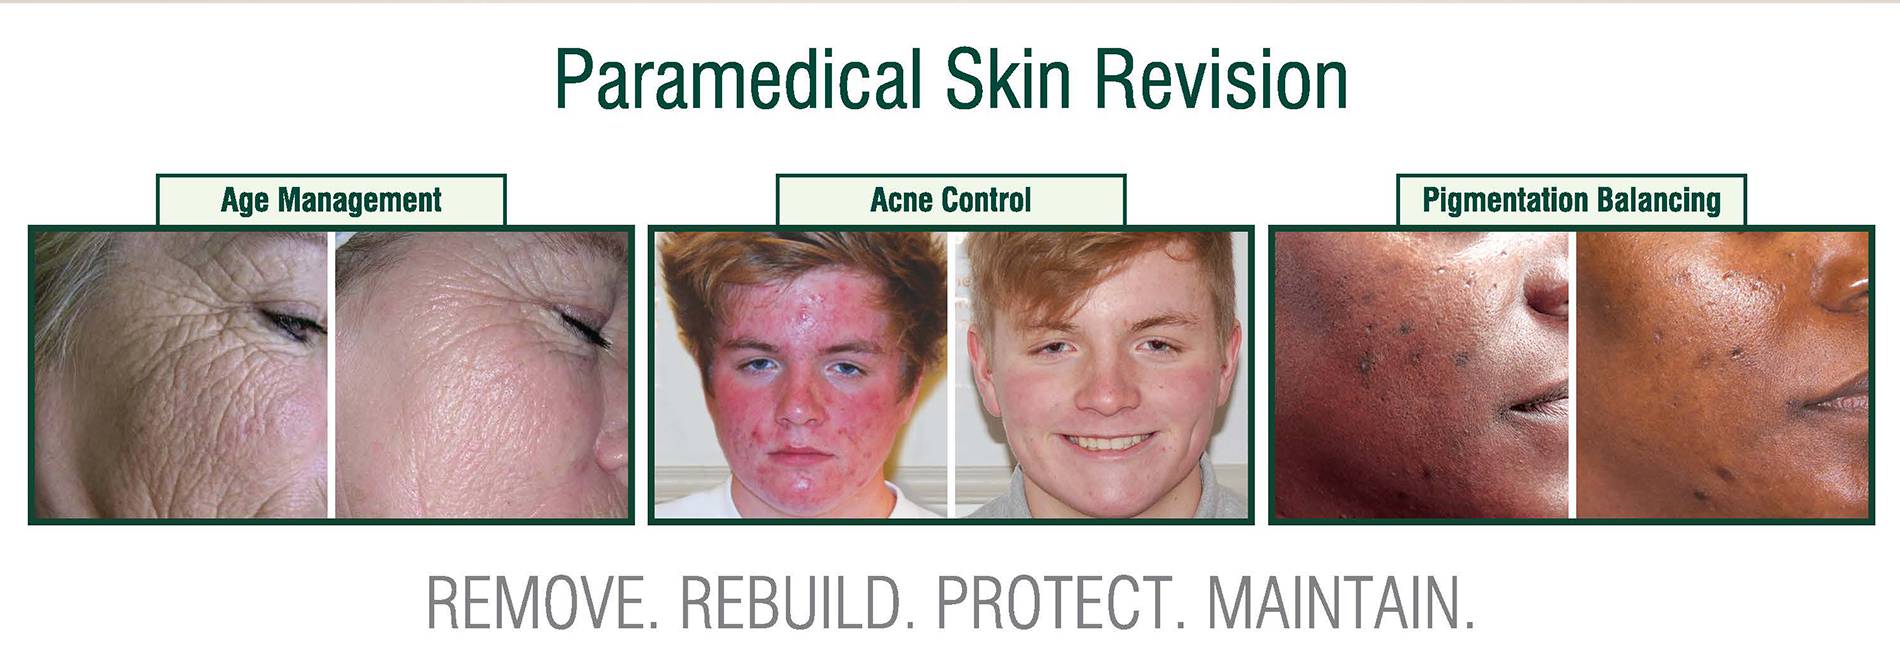 DMK skin care